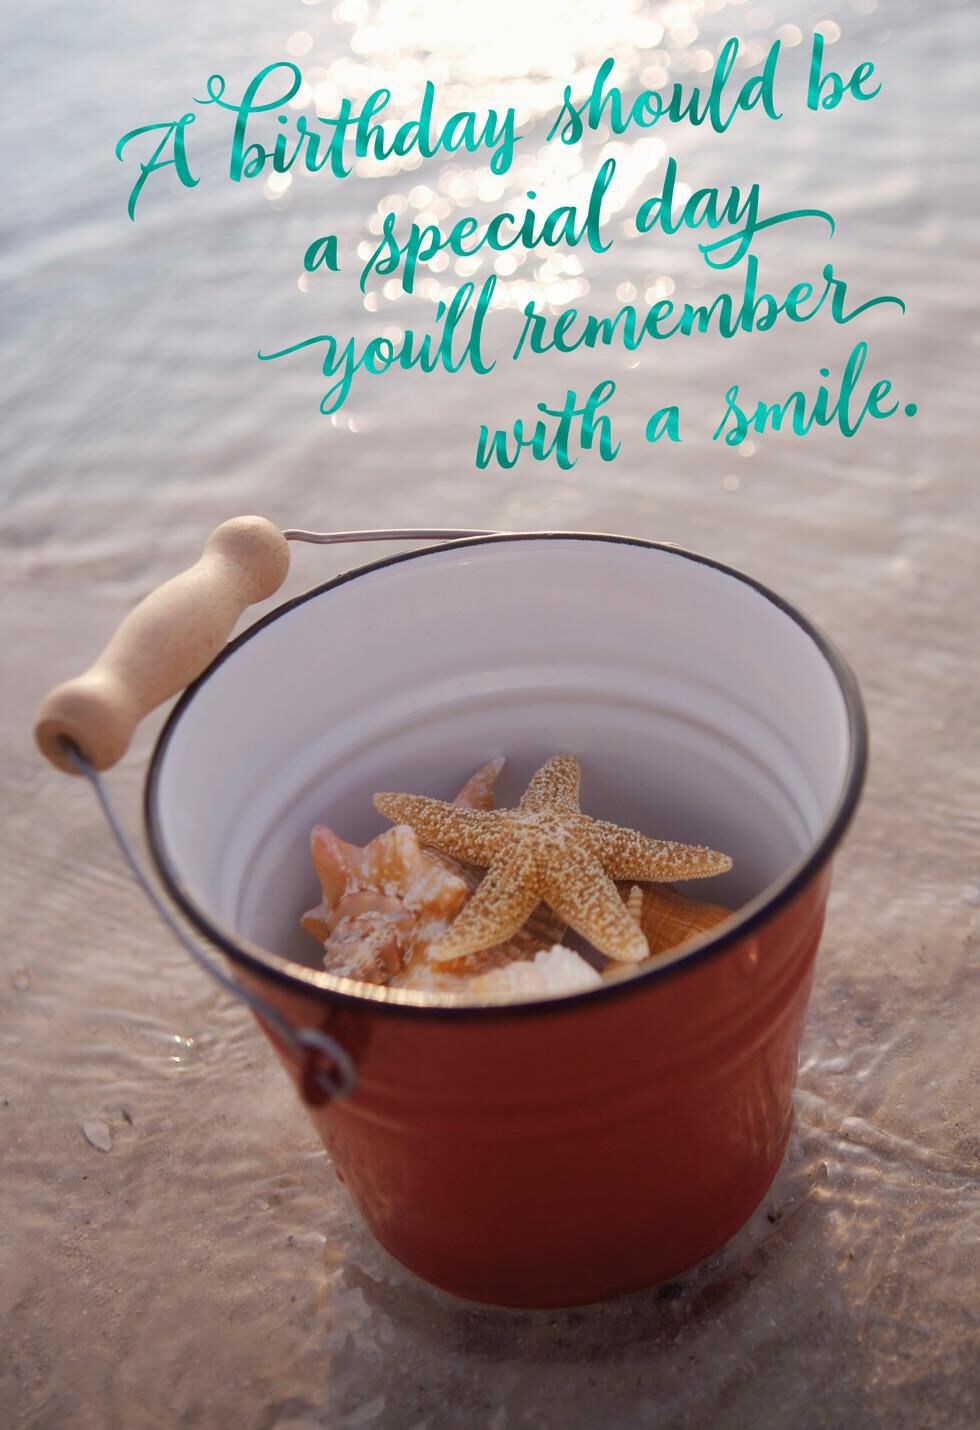 Starfish on Beach Birthday Card - Greeting Cards - Hallmark